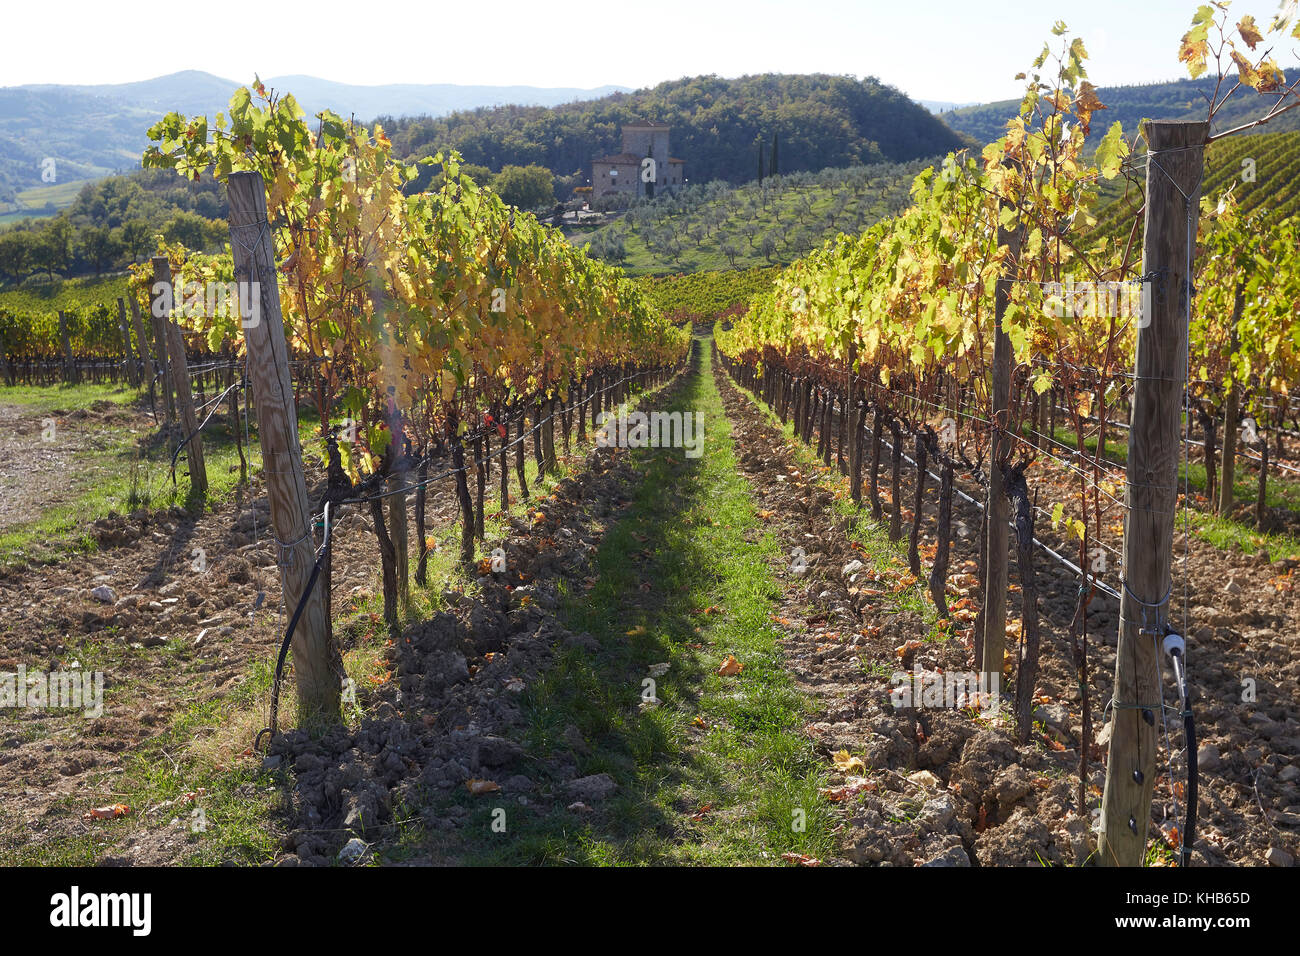 Vineyards of the Castello di Albola estate in the Chianti region, Tuscany, Italy. Stock Photo